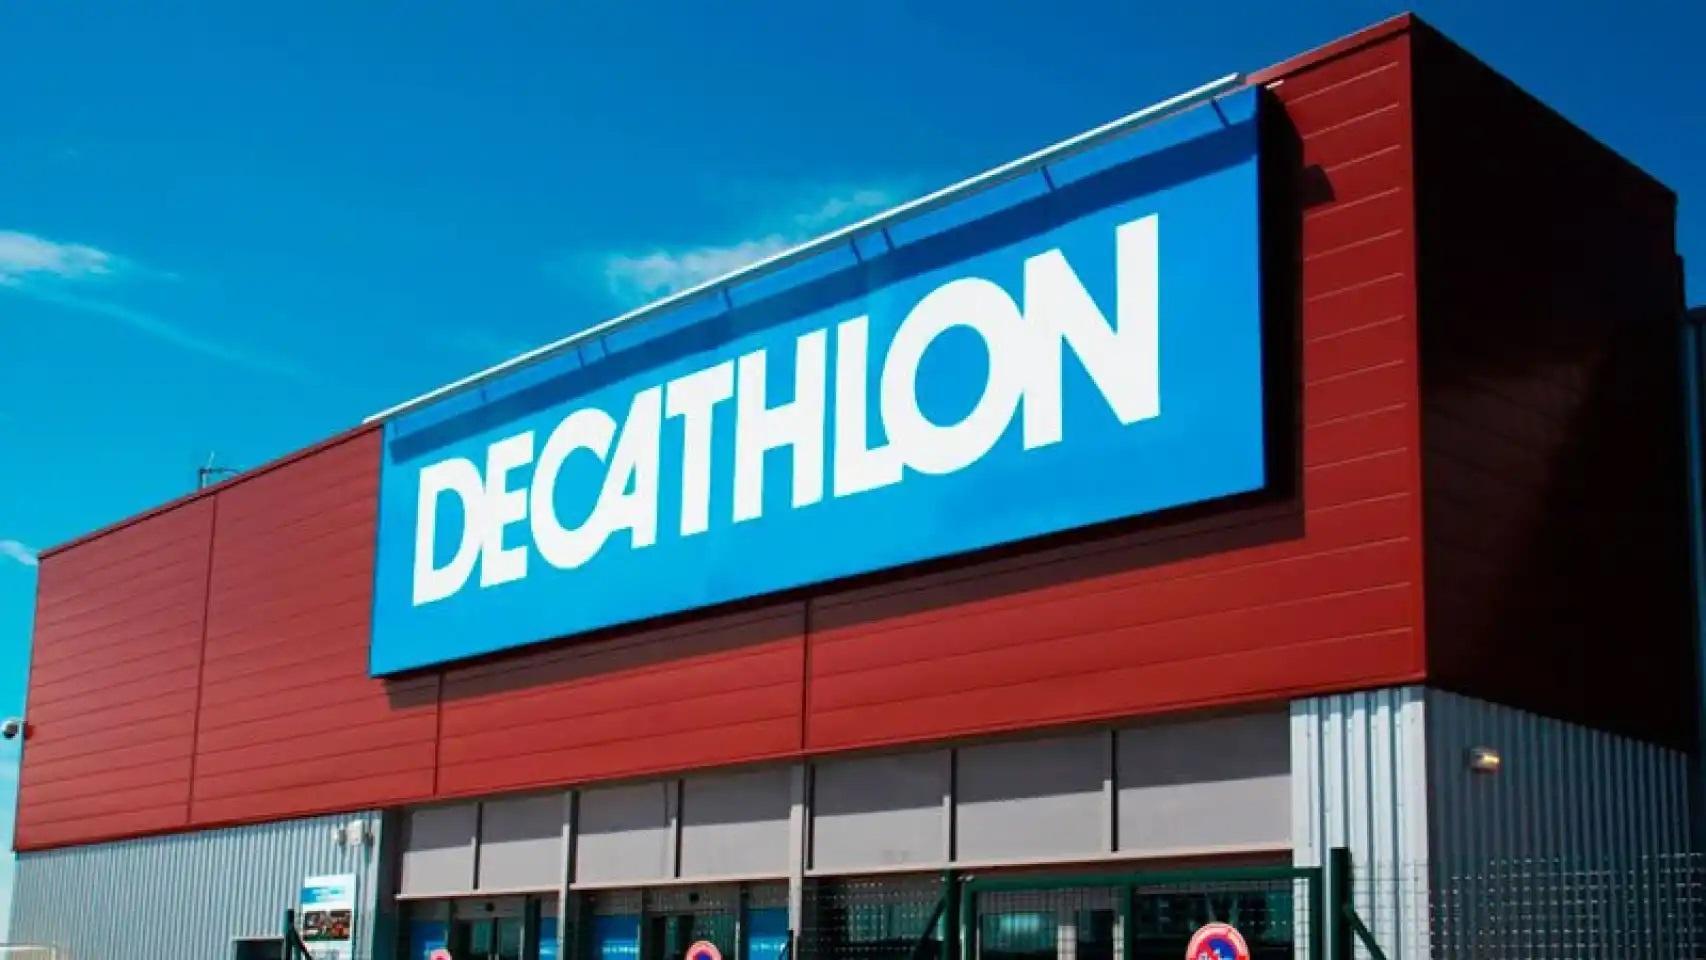 Centro comercial Decathlon.